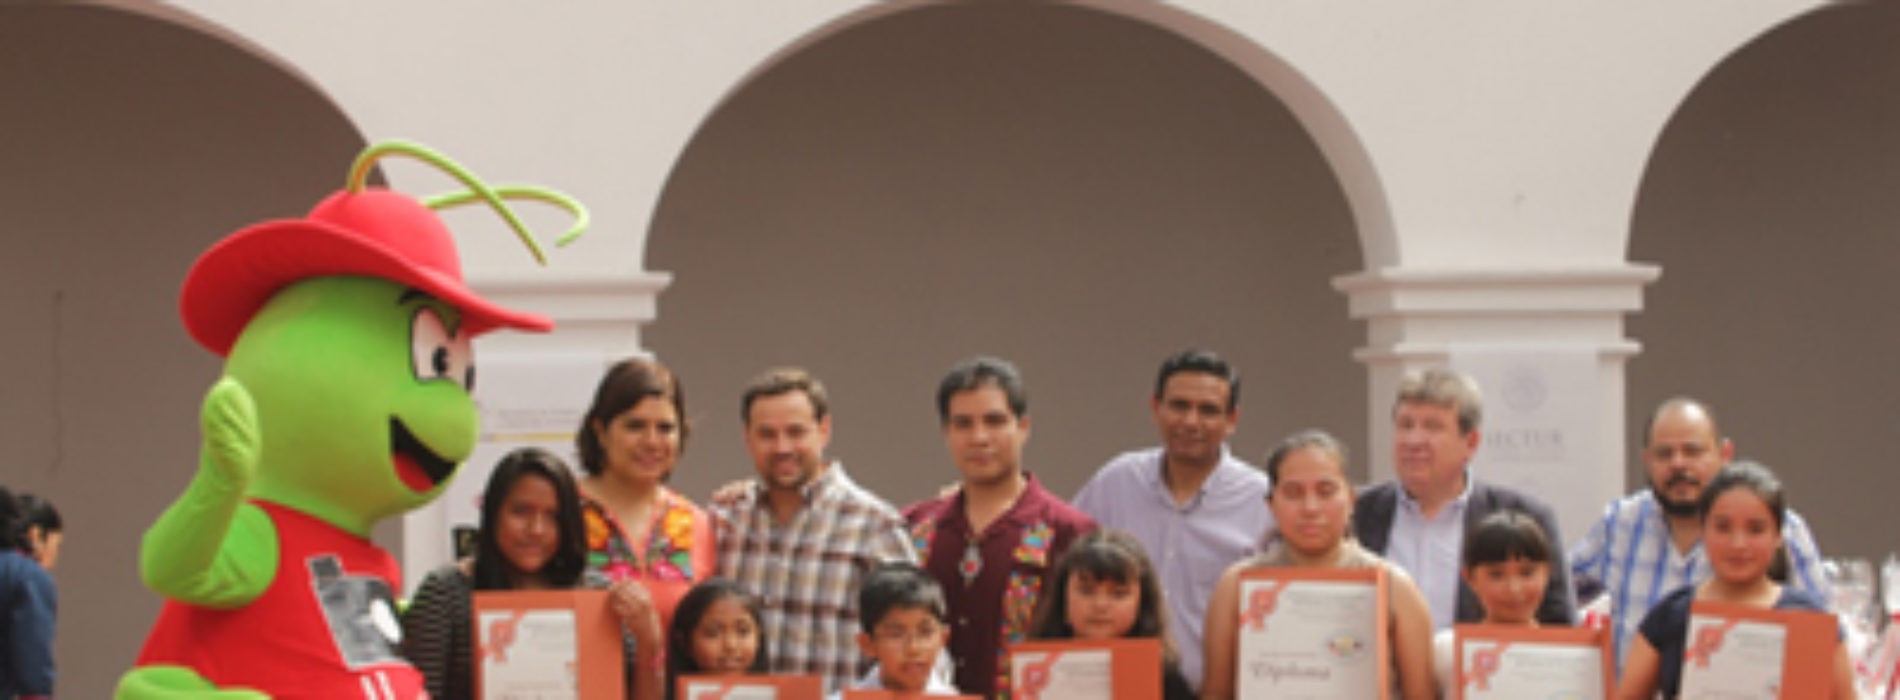 Niñez oaxaqueña enaltece las riquezas culturales de Oaxaca en Concurso Nacional de Cultura Turística